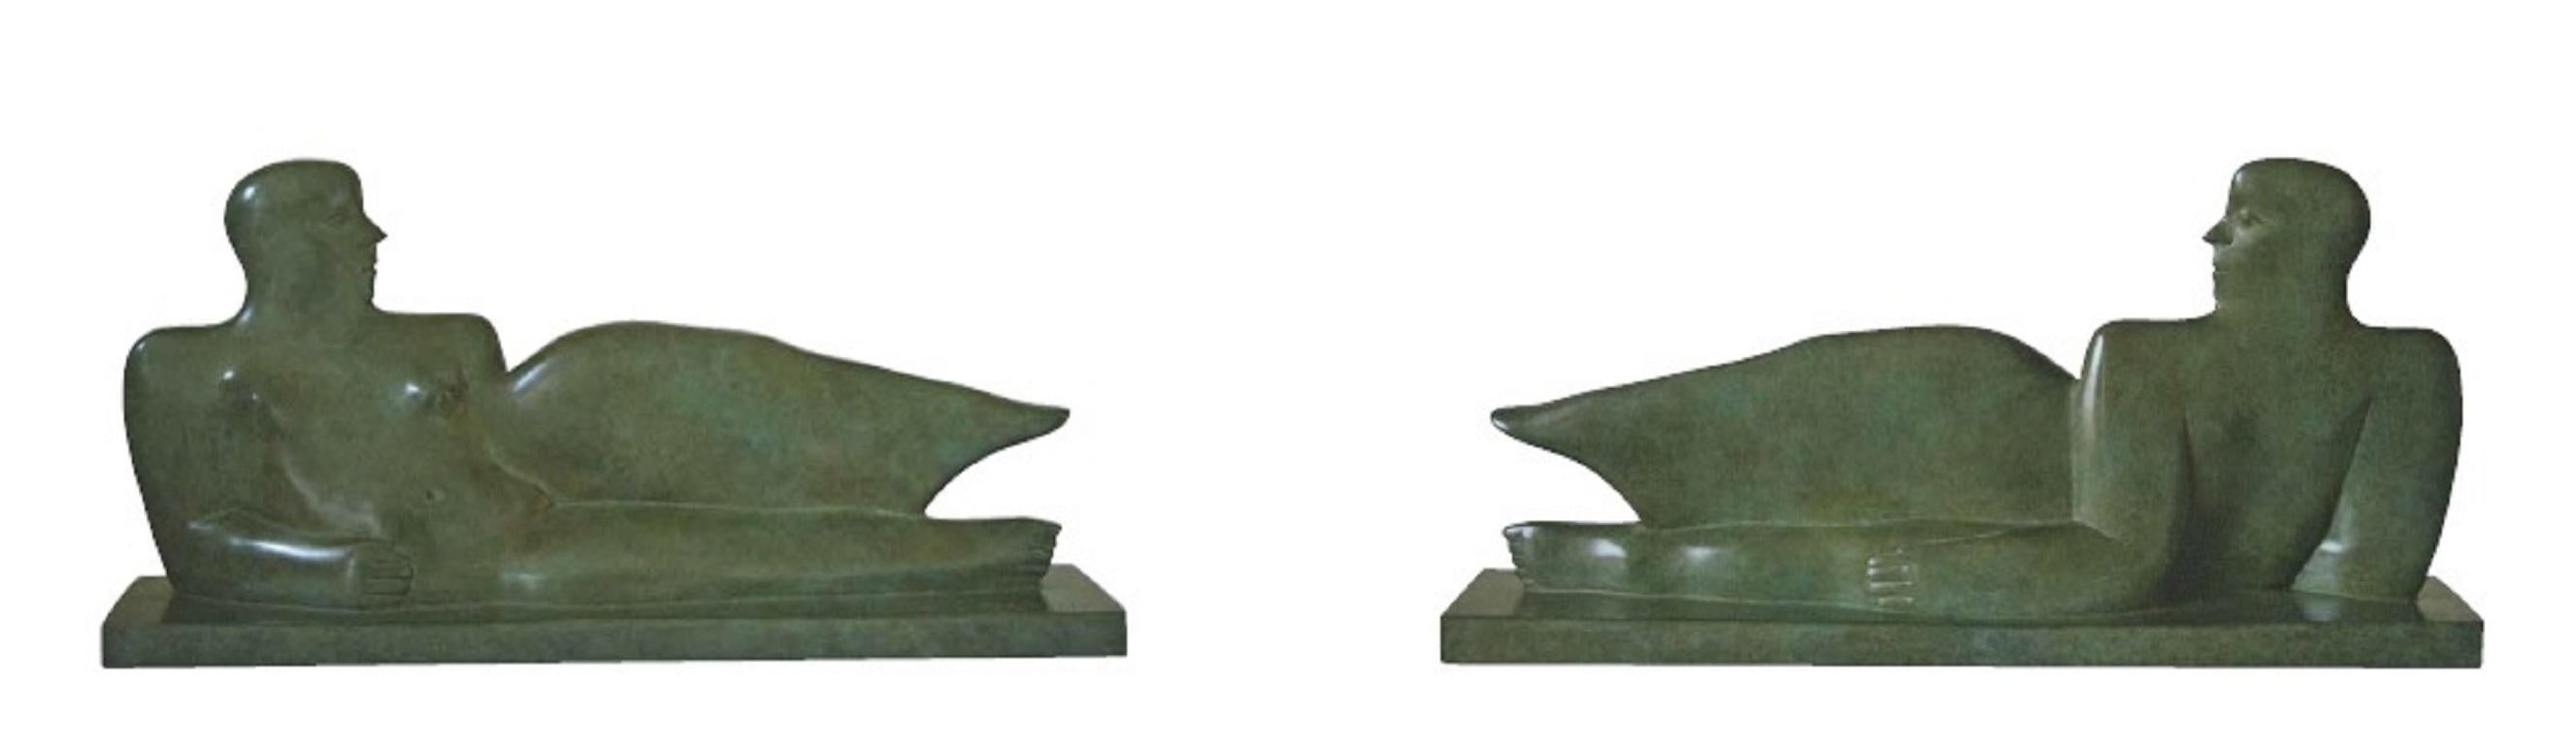 Eroina Sdraiata  Bronze-Skulptur eines fliegenden Daunen Flügels, figurativer Engel  (Zeitgenössisch), Sculpture, von KOBE